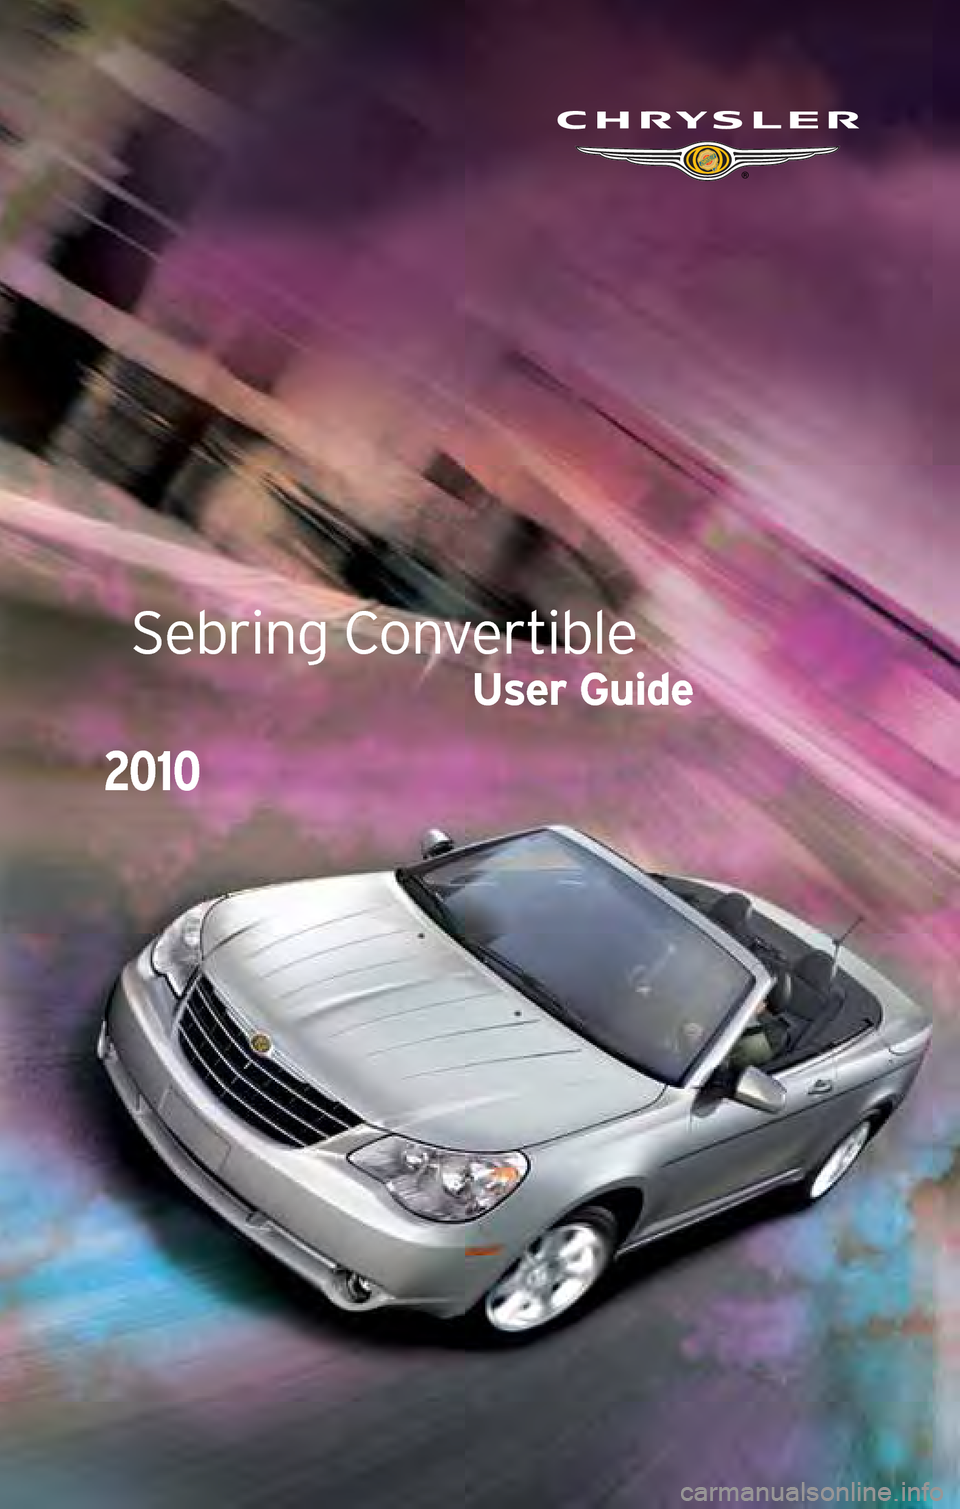 CHRYSLER SEBRING CONVERTIBLE 2010 3.G User Guide Sebring Convertible
User Guide
2010 